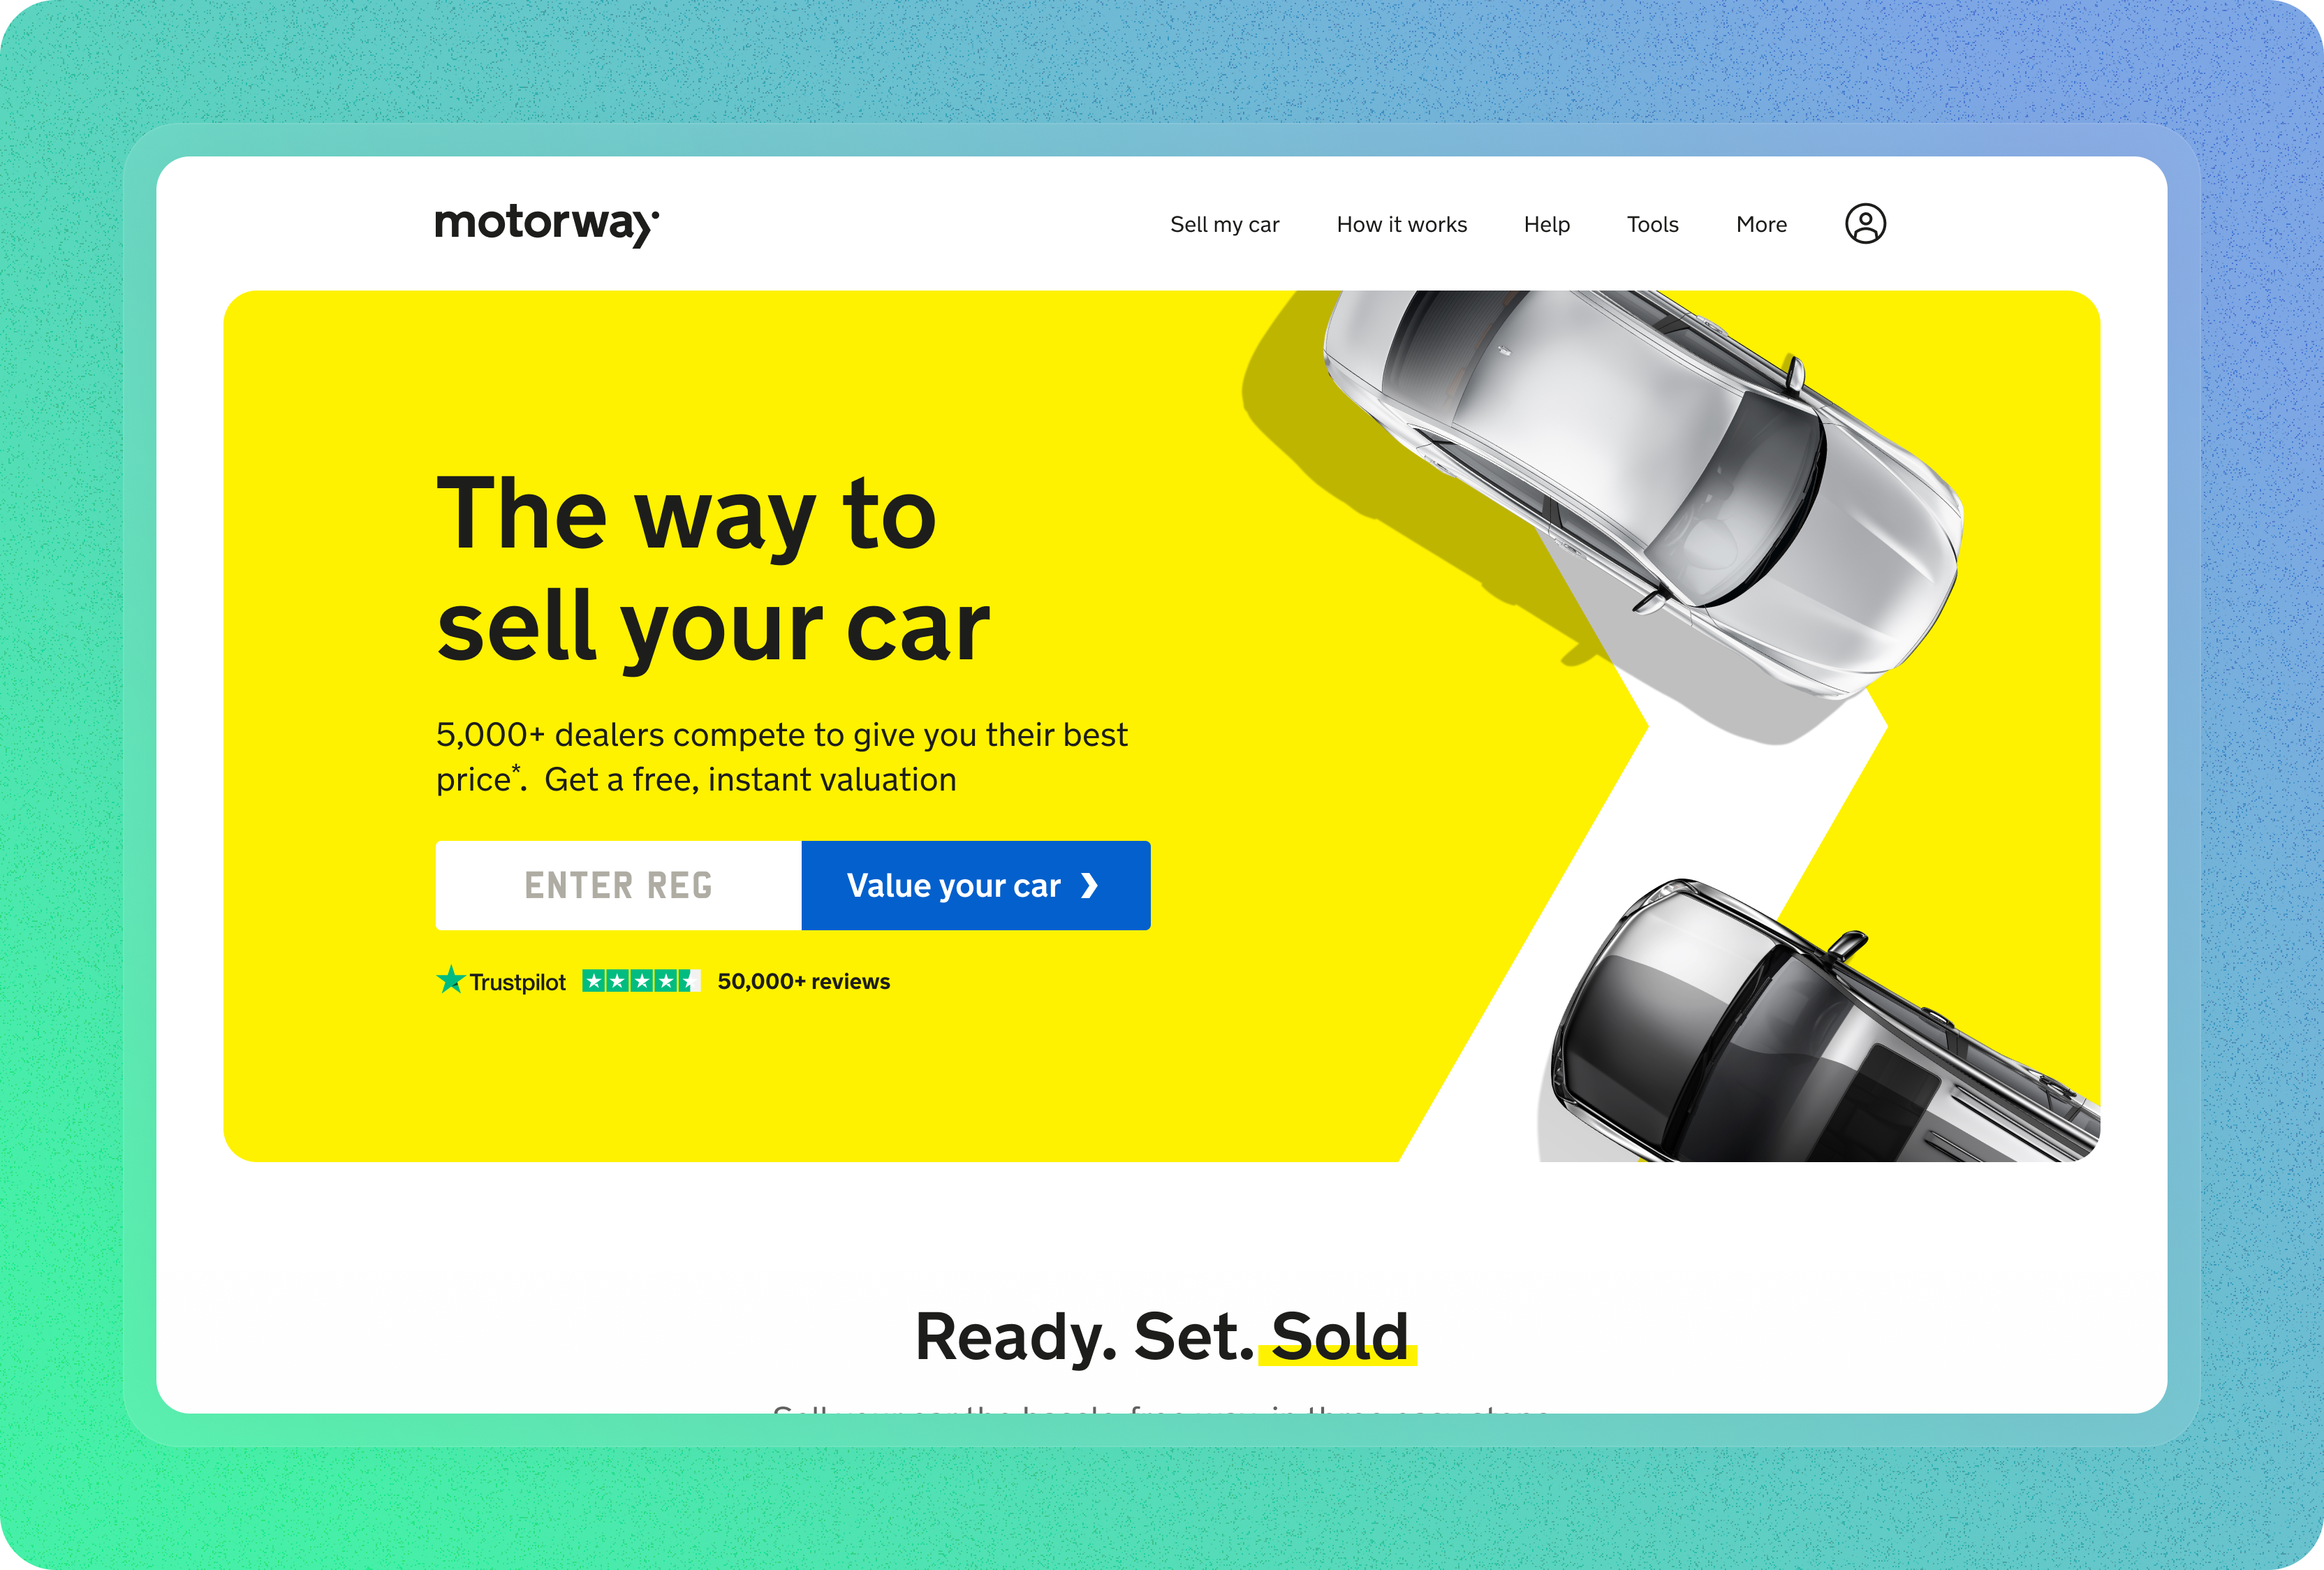 Redesigning the Motorway homepage